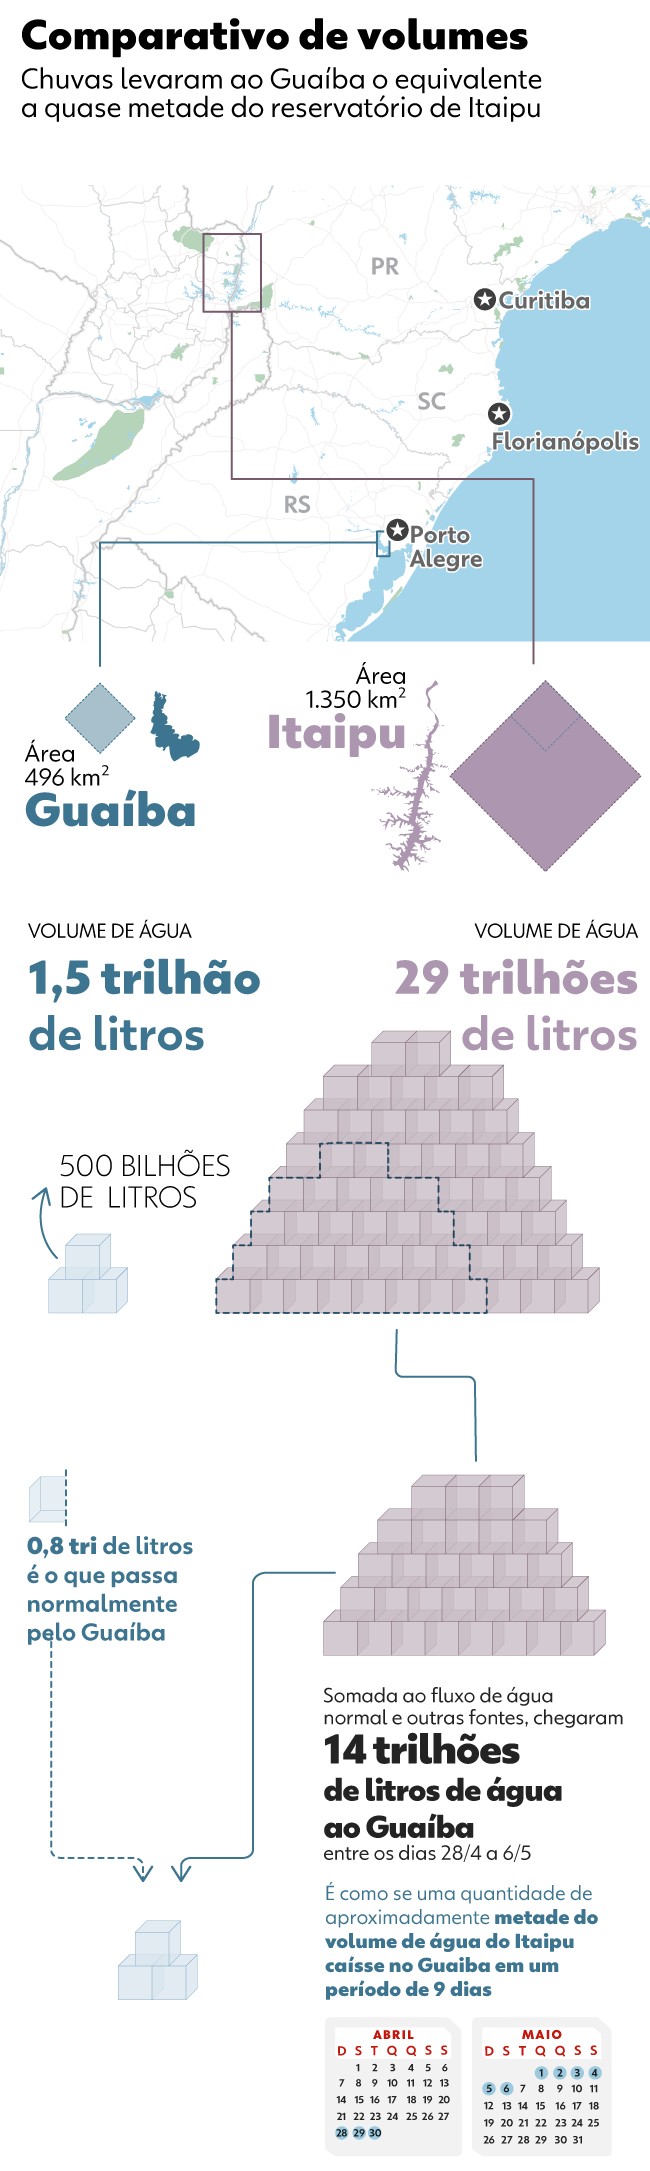 Guaíba recebeu quase metade do volume de água de Itaipu em uma semana de chuvas, aponta instituto da UFRGS 